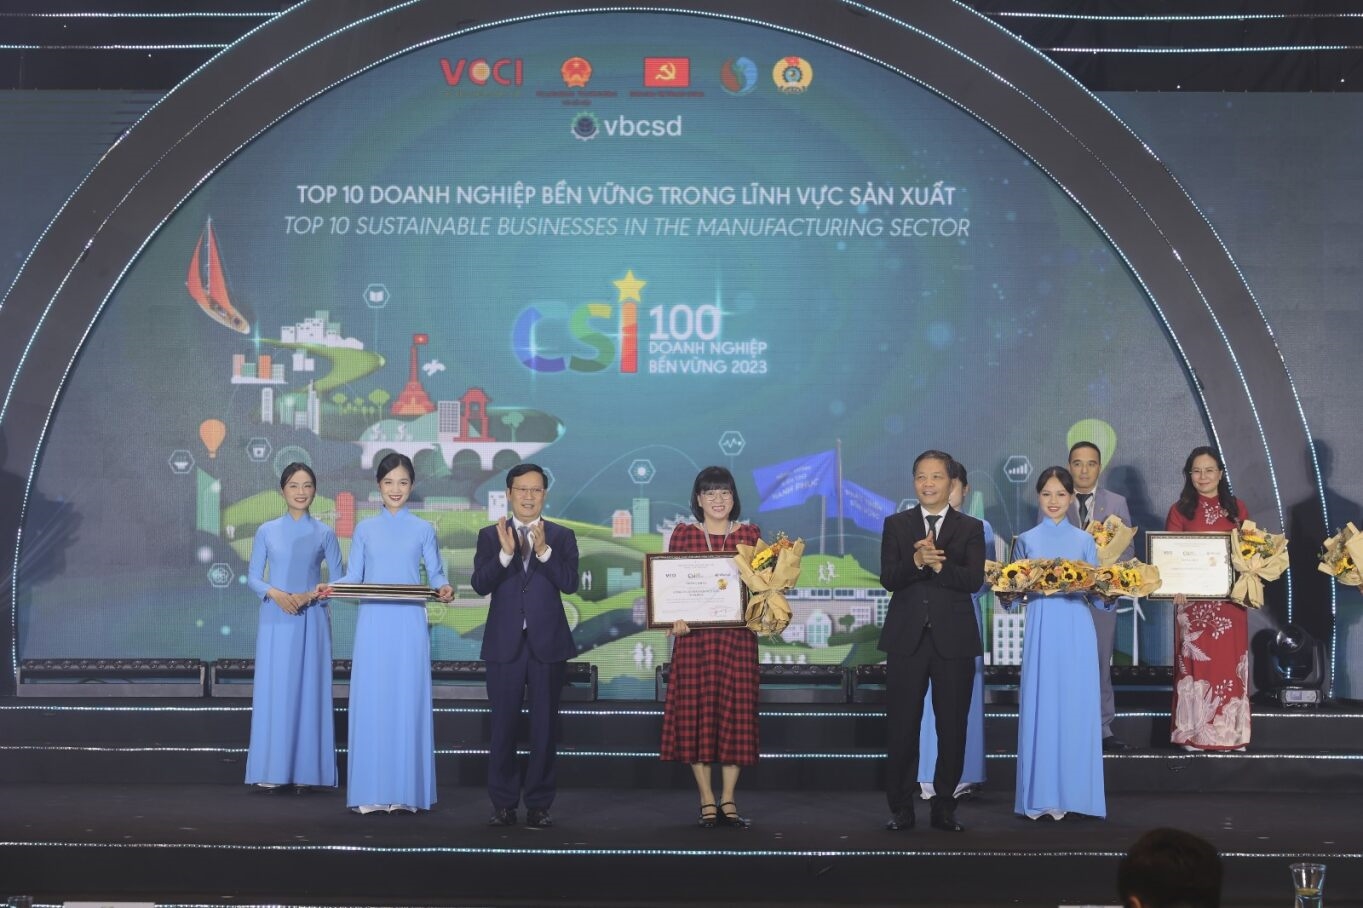 Đại diện Vinamilk nhận giải thưởng Top 10 Doanh nghiệp bền vững trong lĩnh vực sản xuất